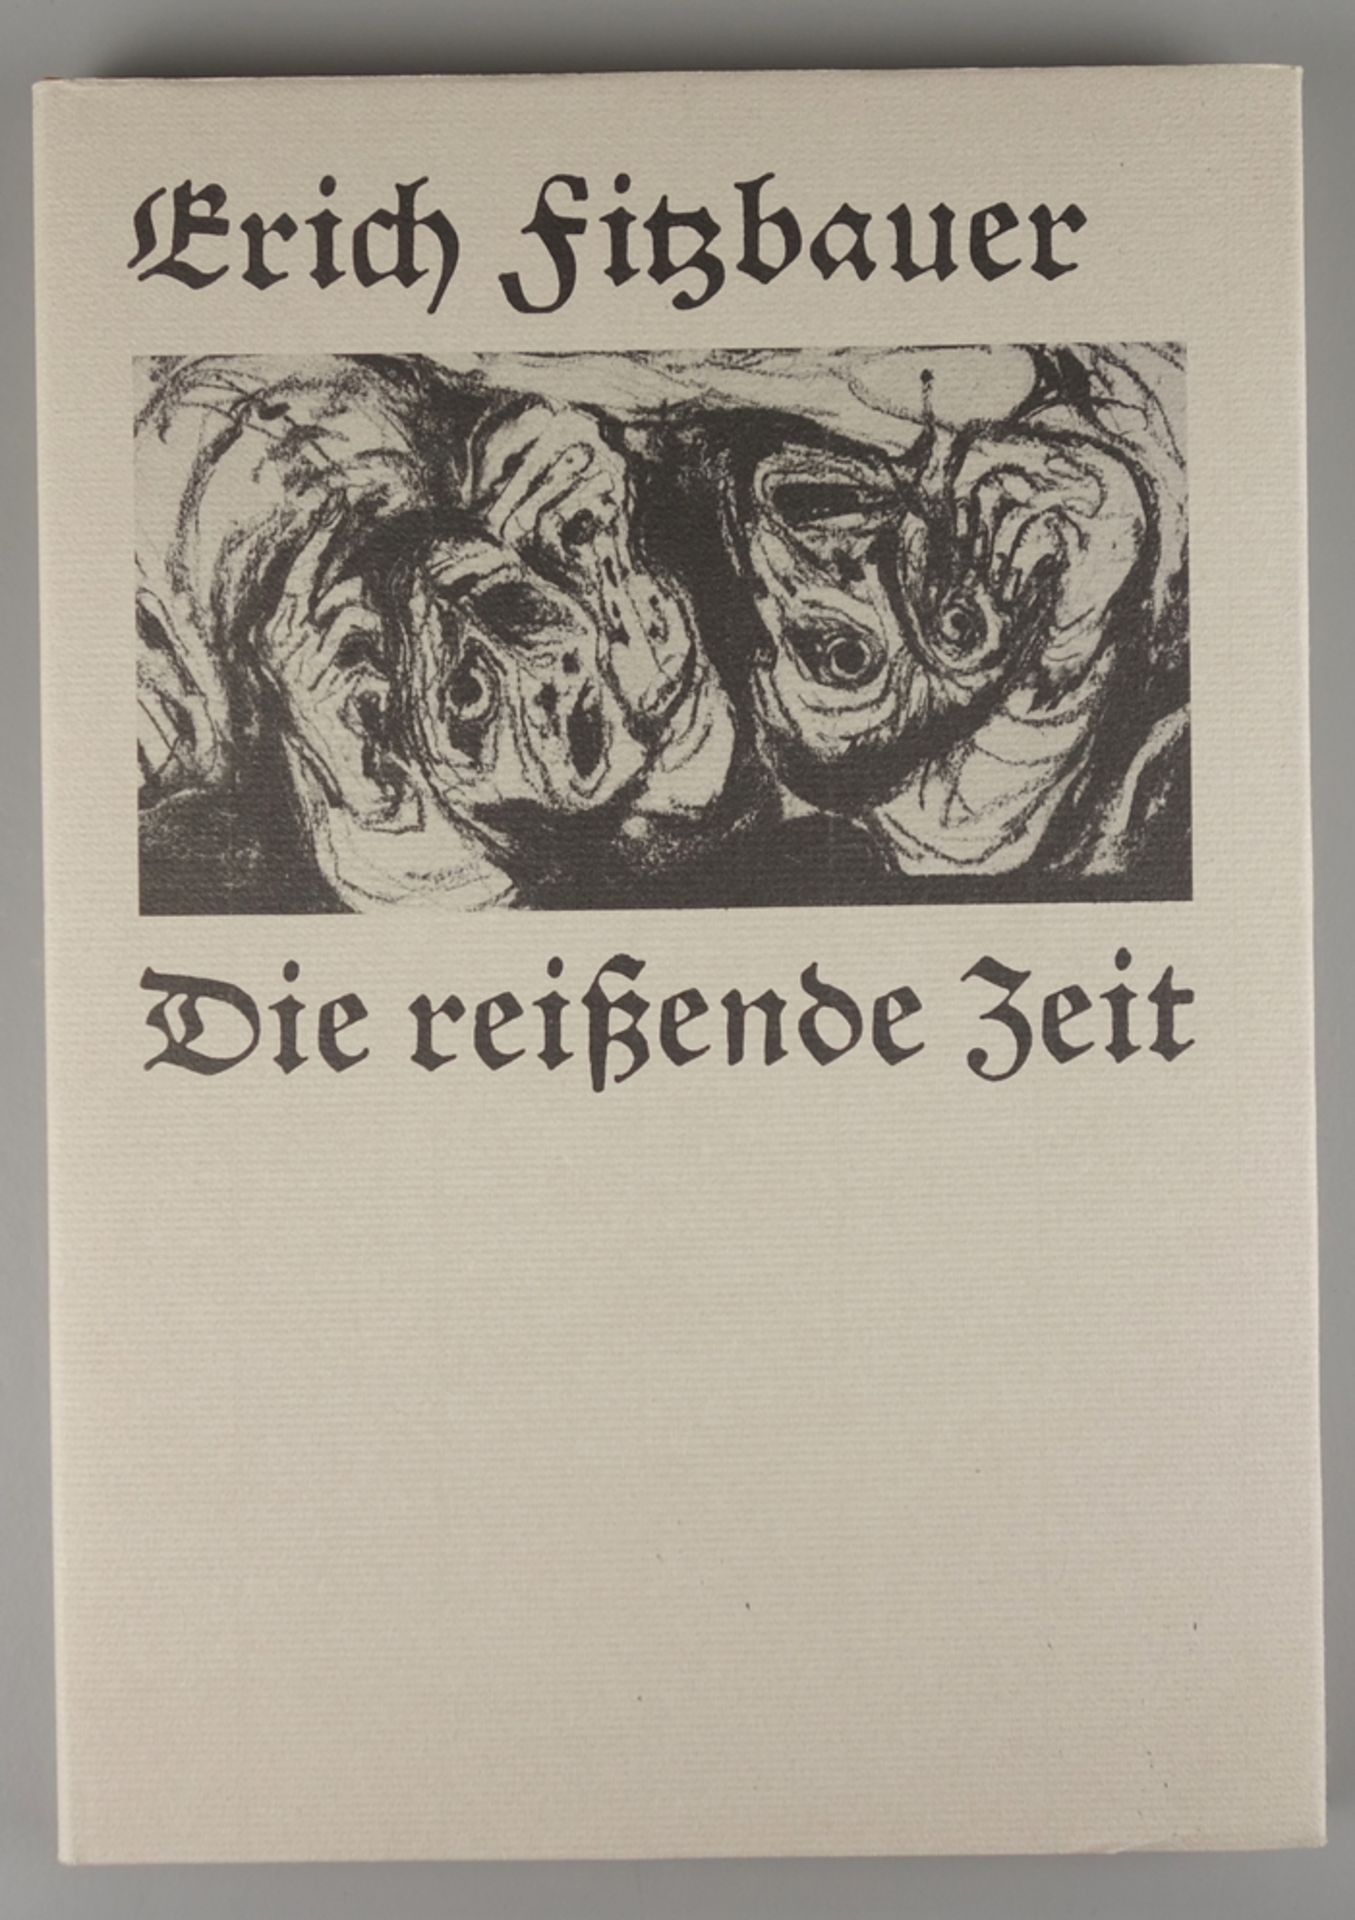 Erich Fitzbauer (*1927, Vienna), "Die reißende Zeit", with graphics by various artists, 1978